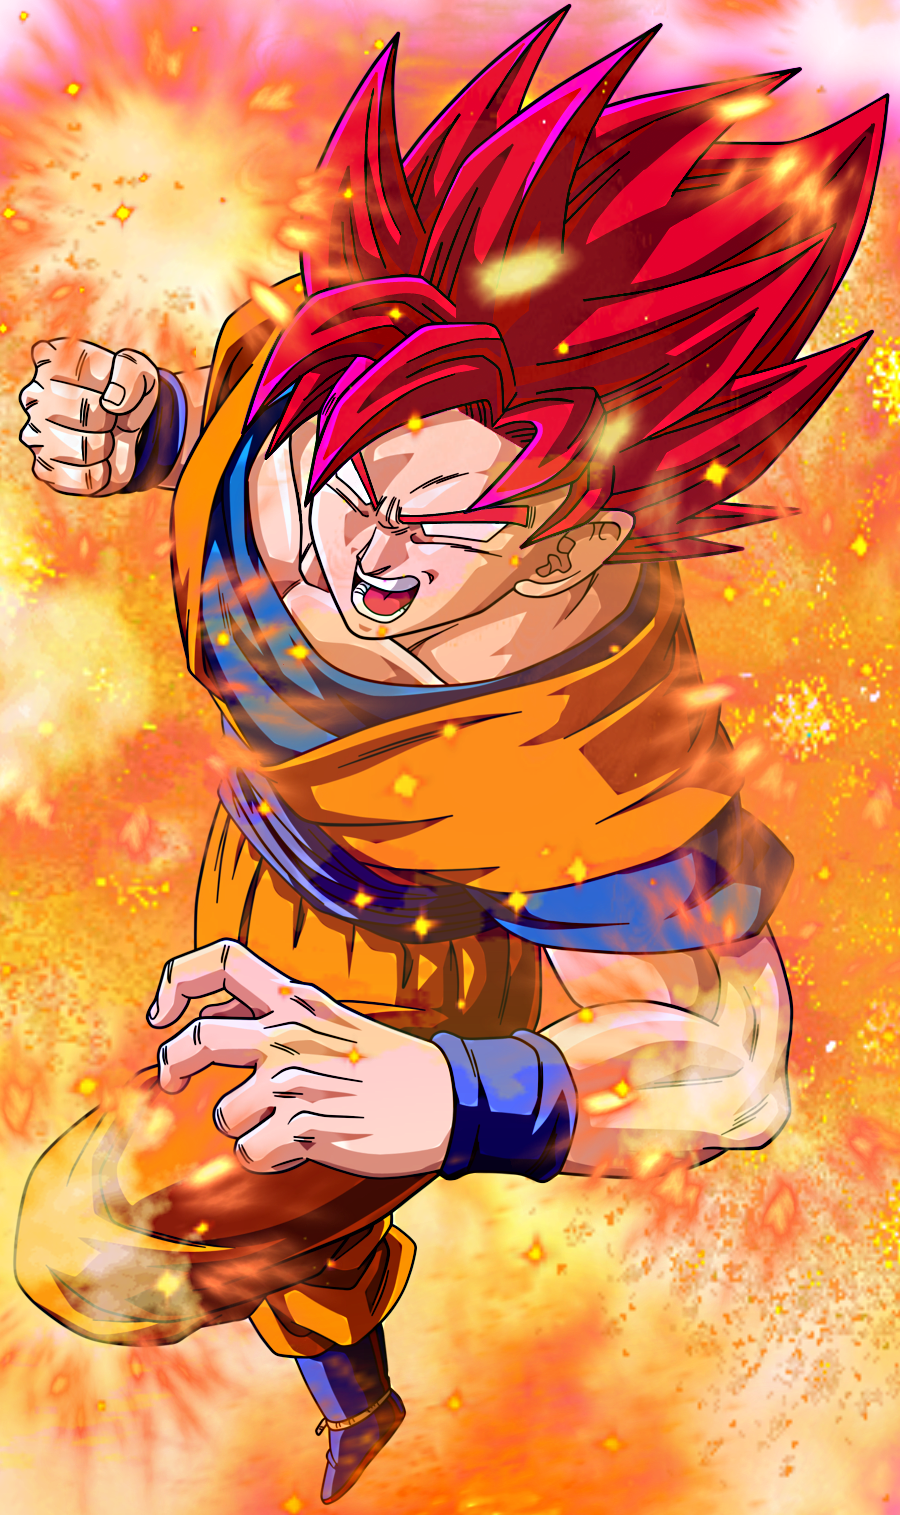 Free download Super Saiyan 2 Goku